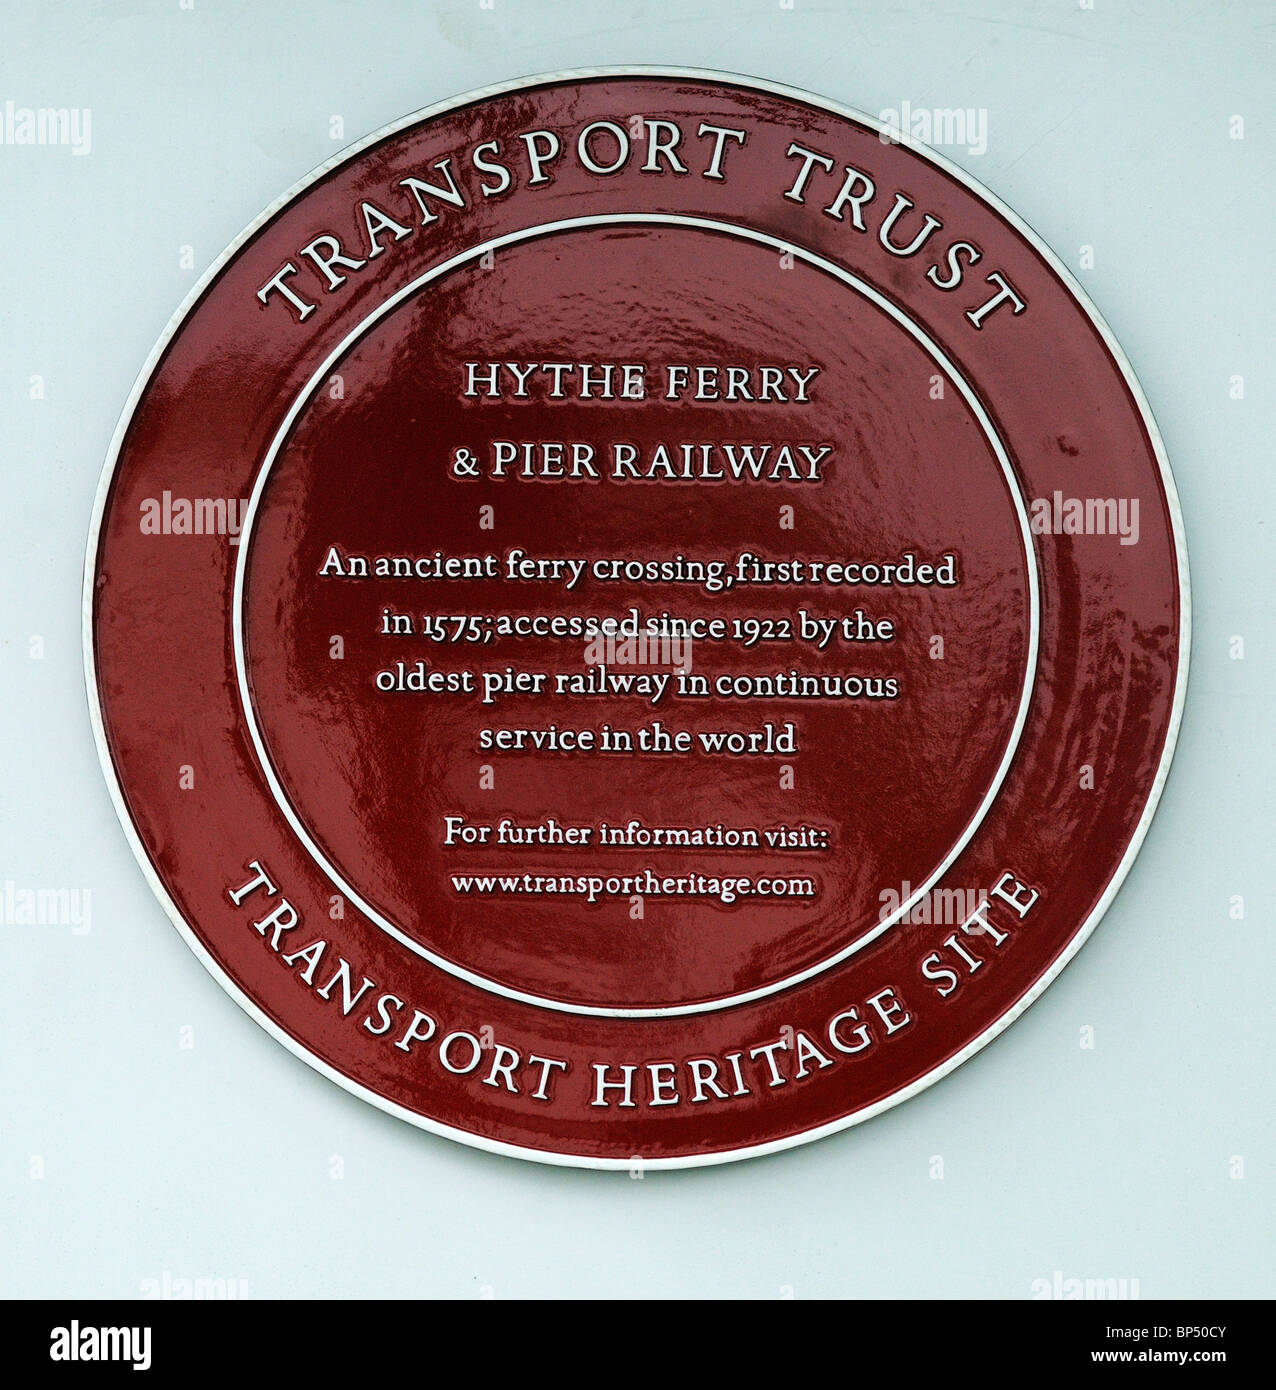 Patrimoine Transport signe à Hythe & Ferry Pier Railway Hampshire England UK Banque D'Images